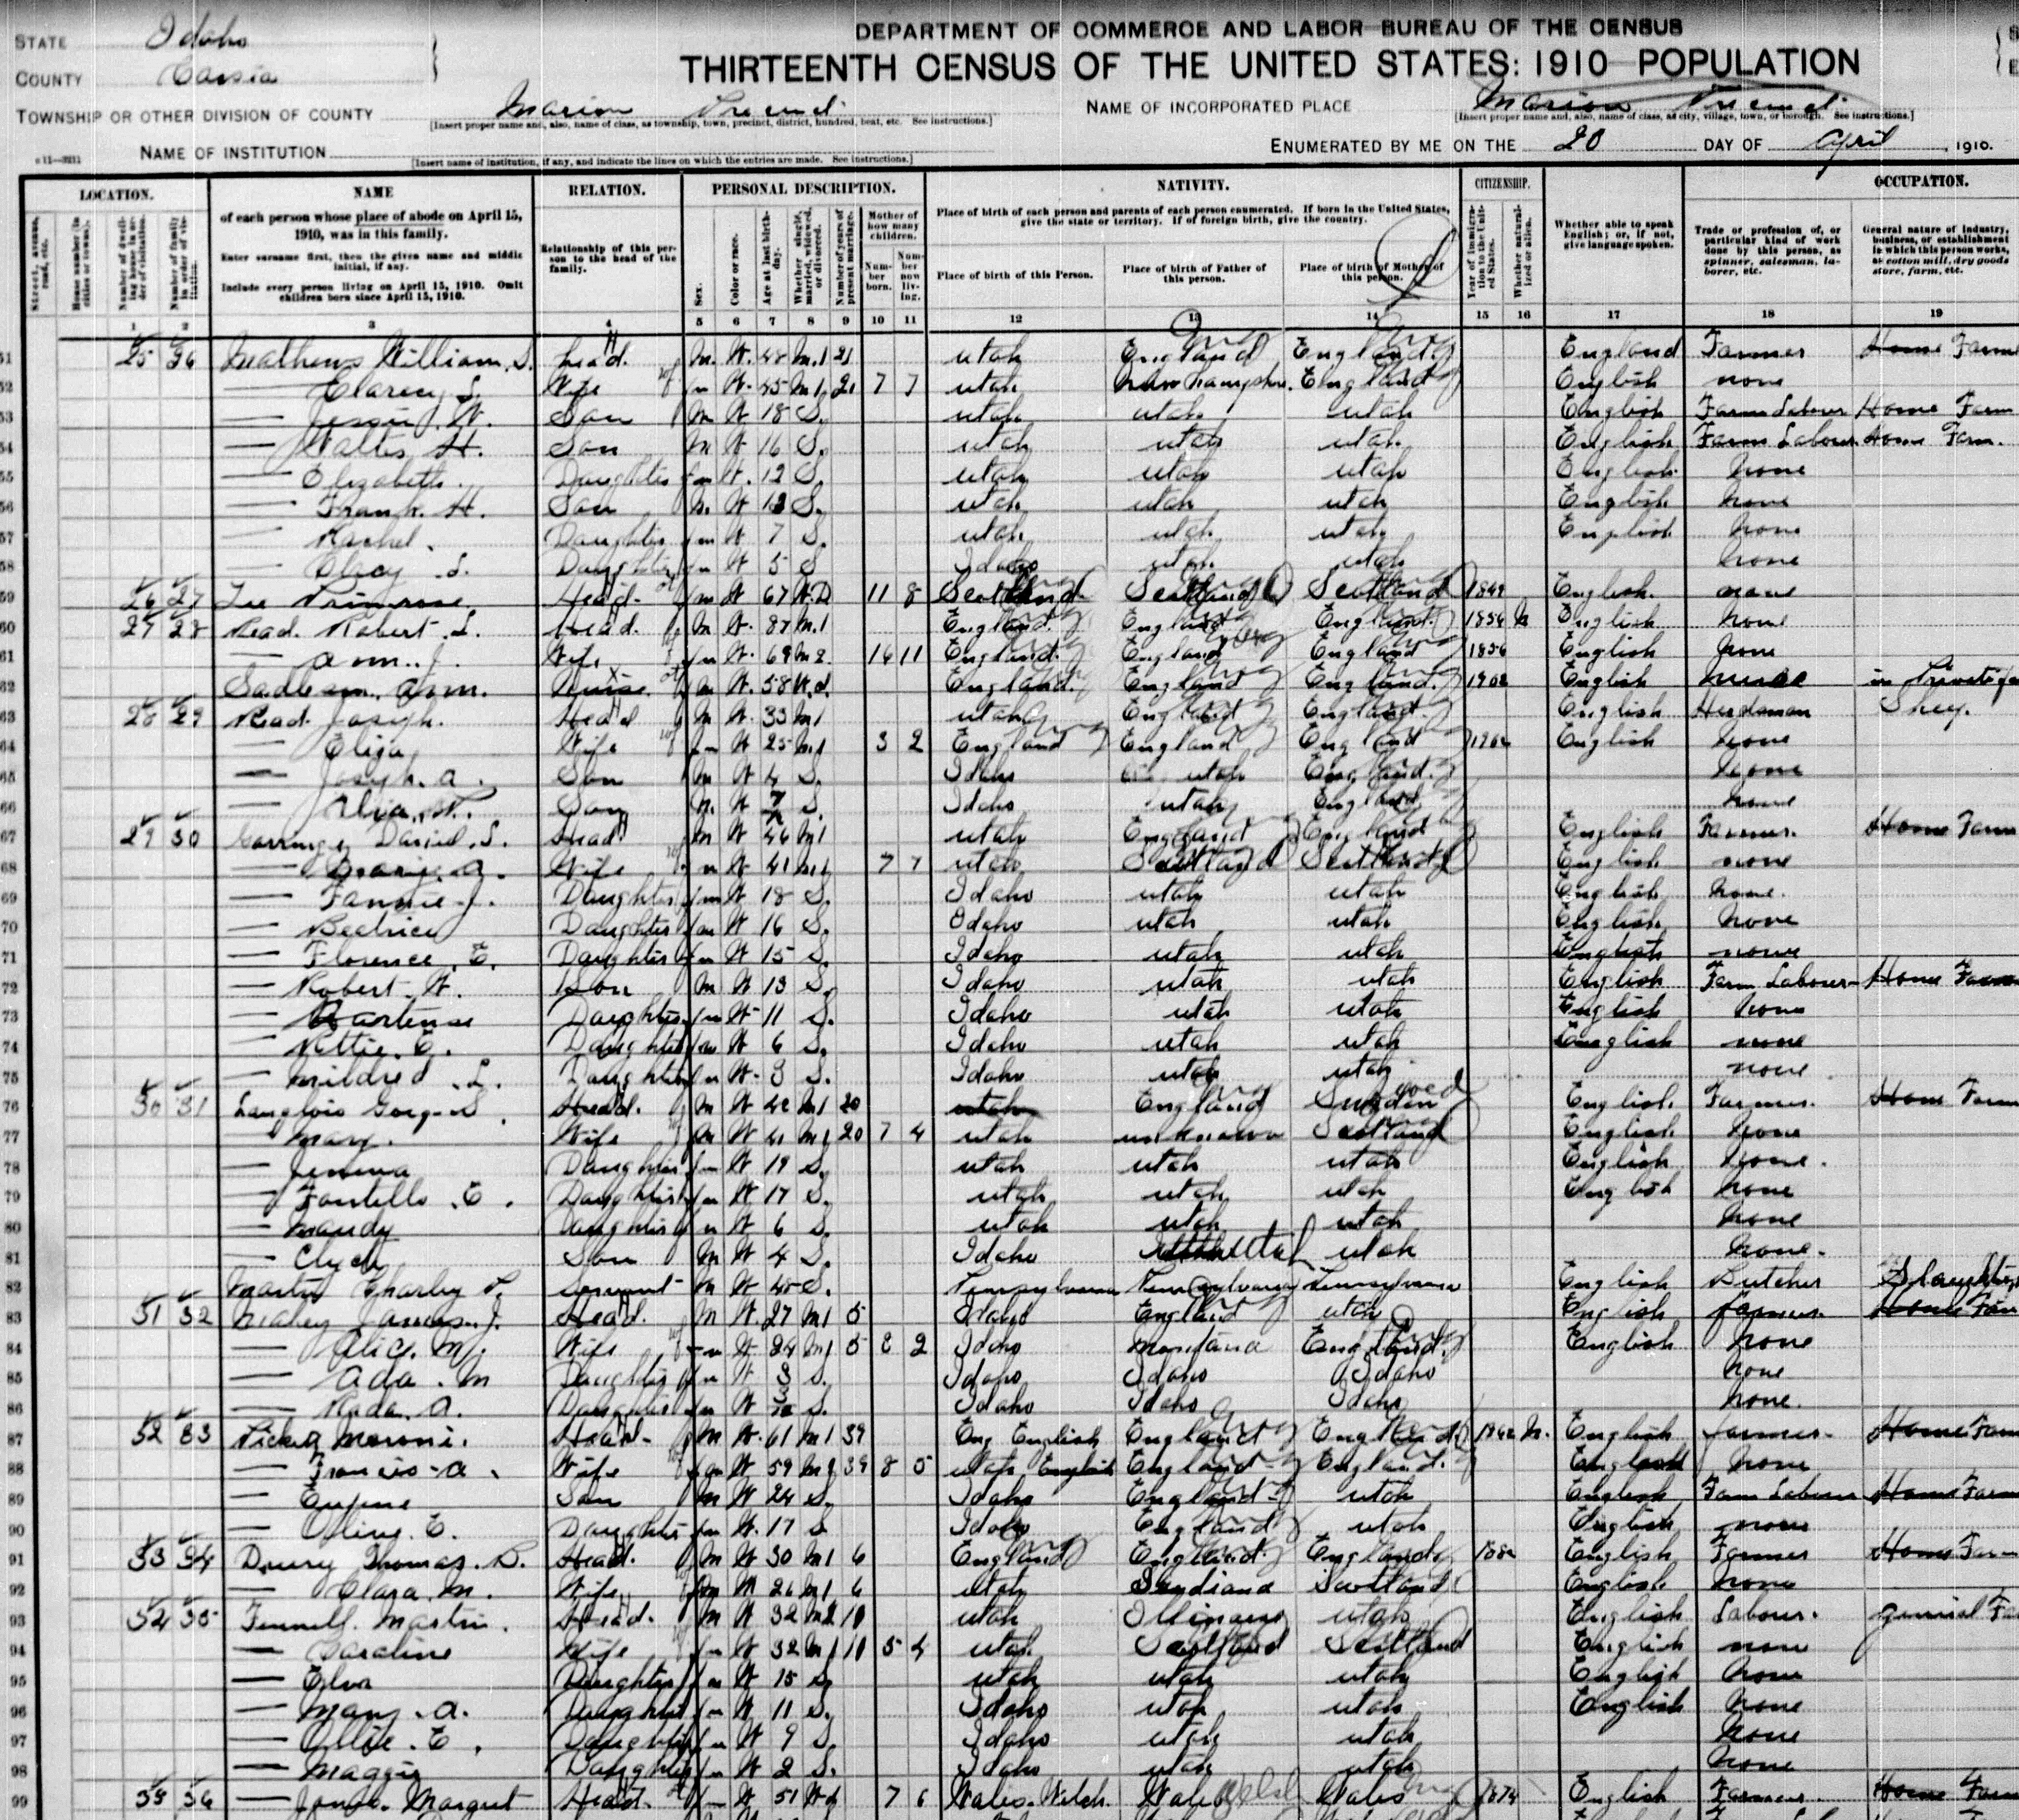 1910 U.S. Census Record-Daniel Lambert Gorringe and Mary Ann Shields